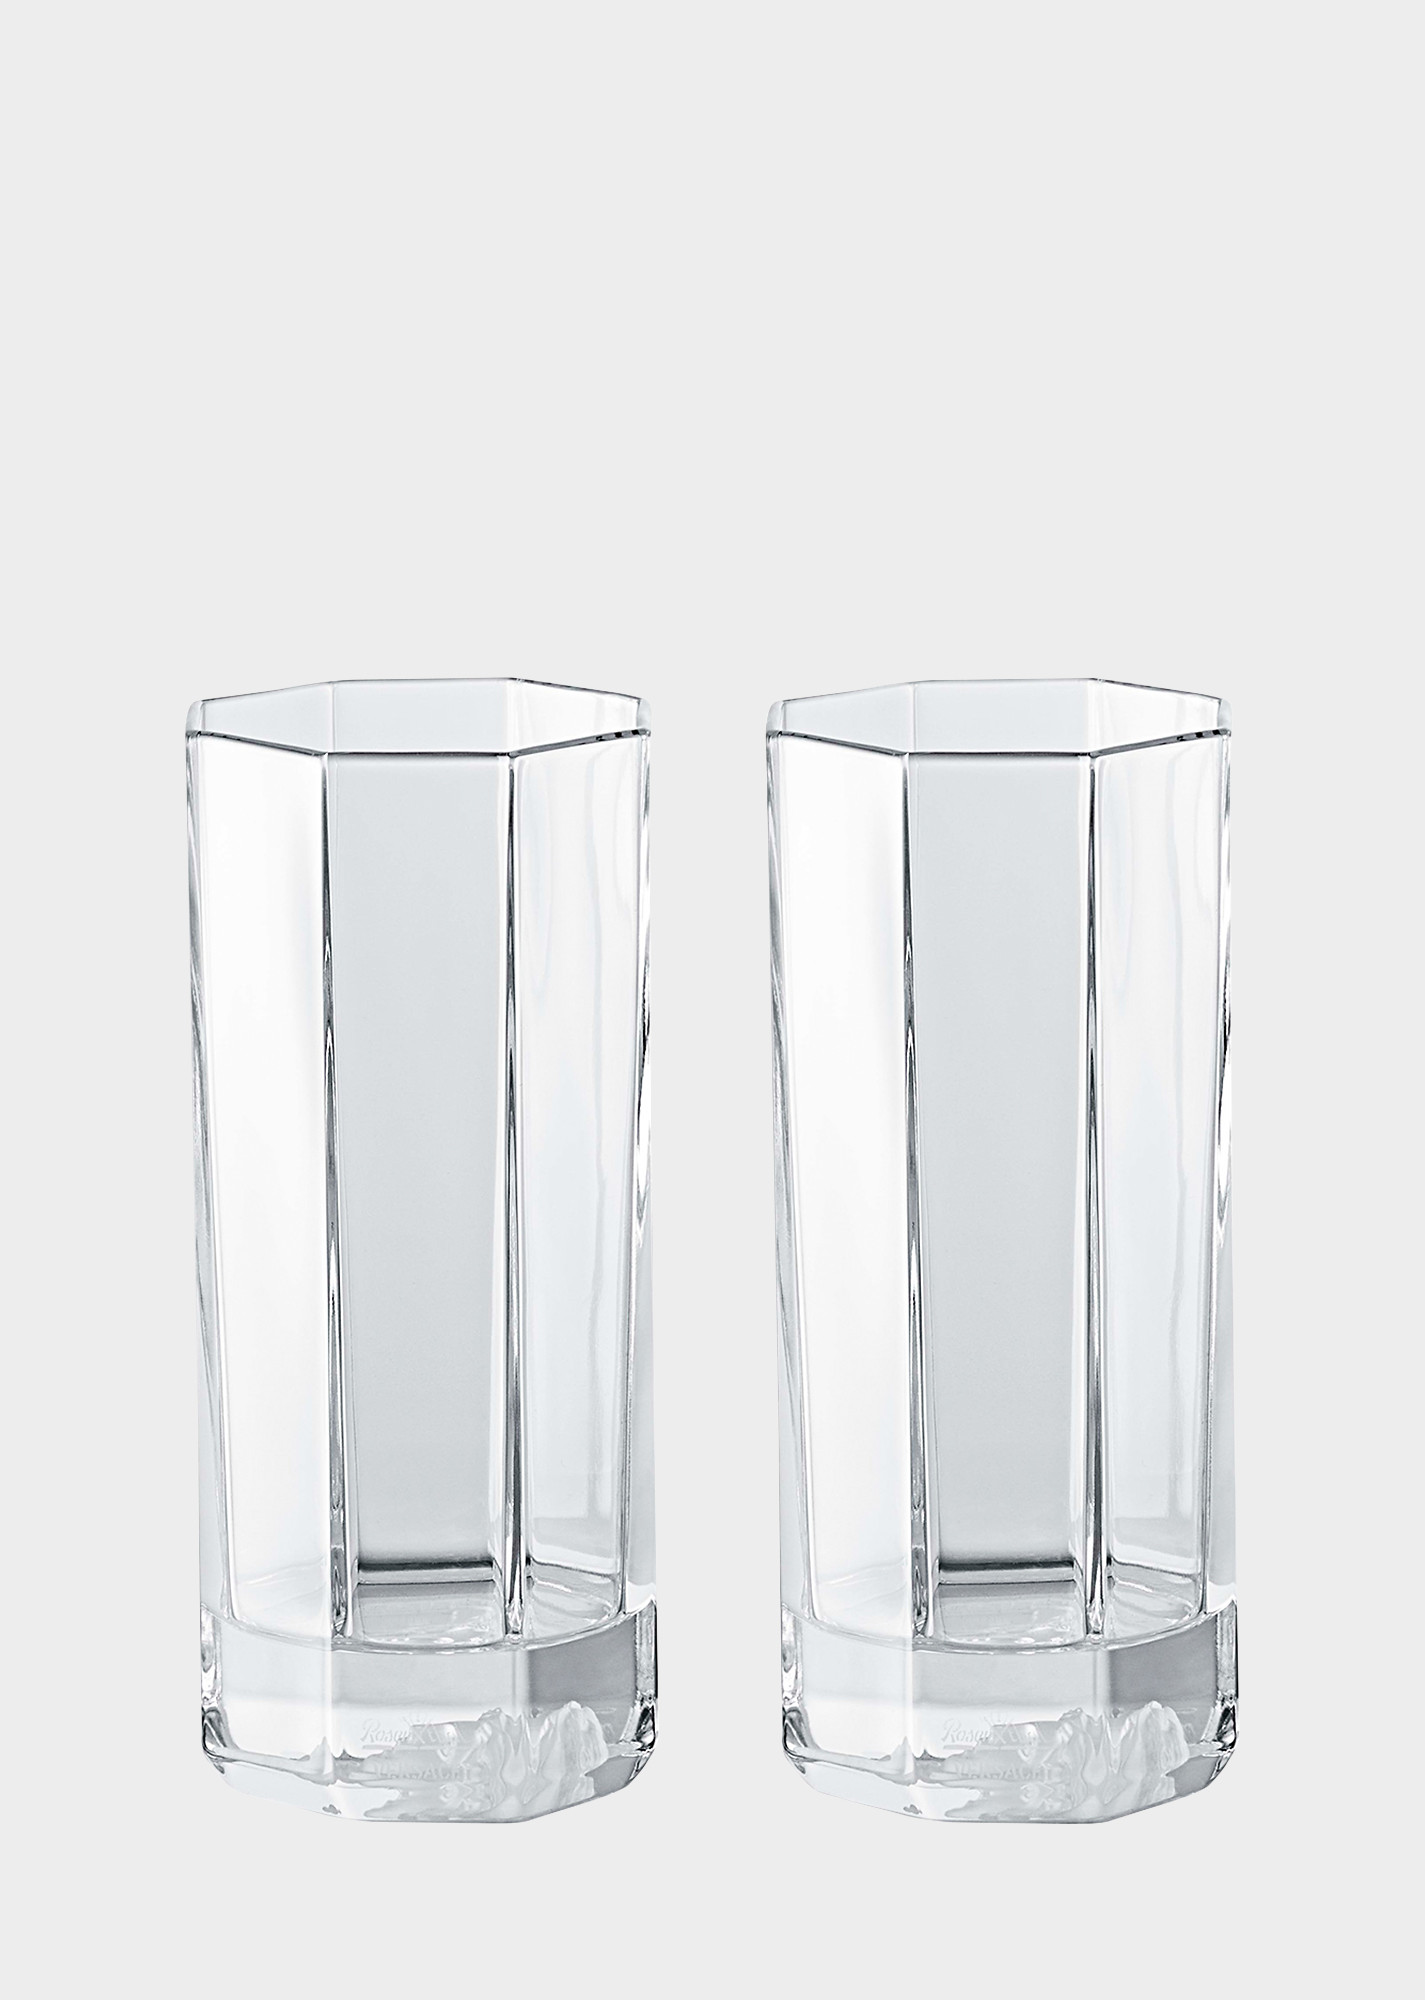 17 Ideal 6 X 12 Glass Cylinder Vase 2024 free download 6 x 12 glass cylinder vase of versace home luxury glass crystal official website intended for 90 n48874 n110835 n2066 20 medusalumierelongdrinkglassset glassandcrystal versace online store 1